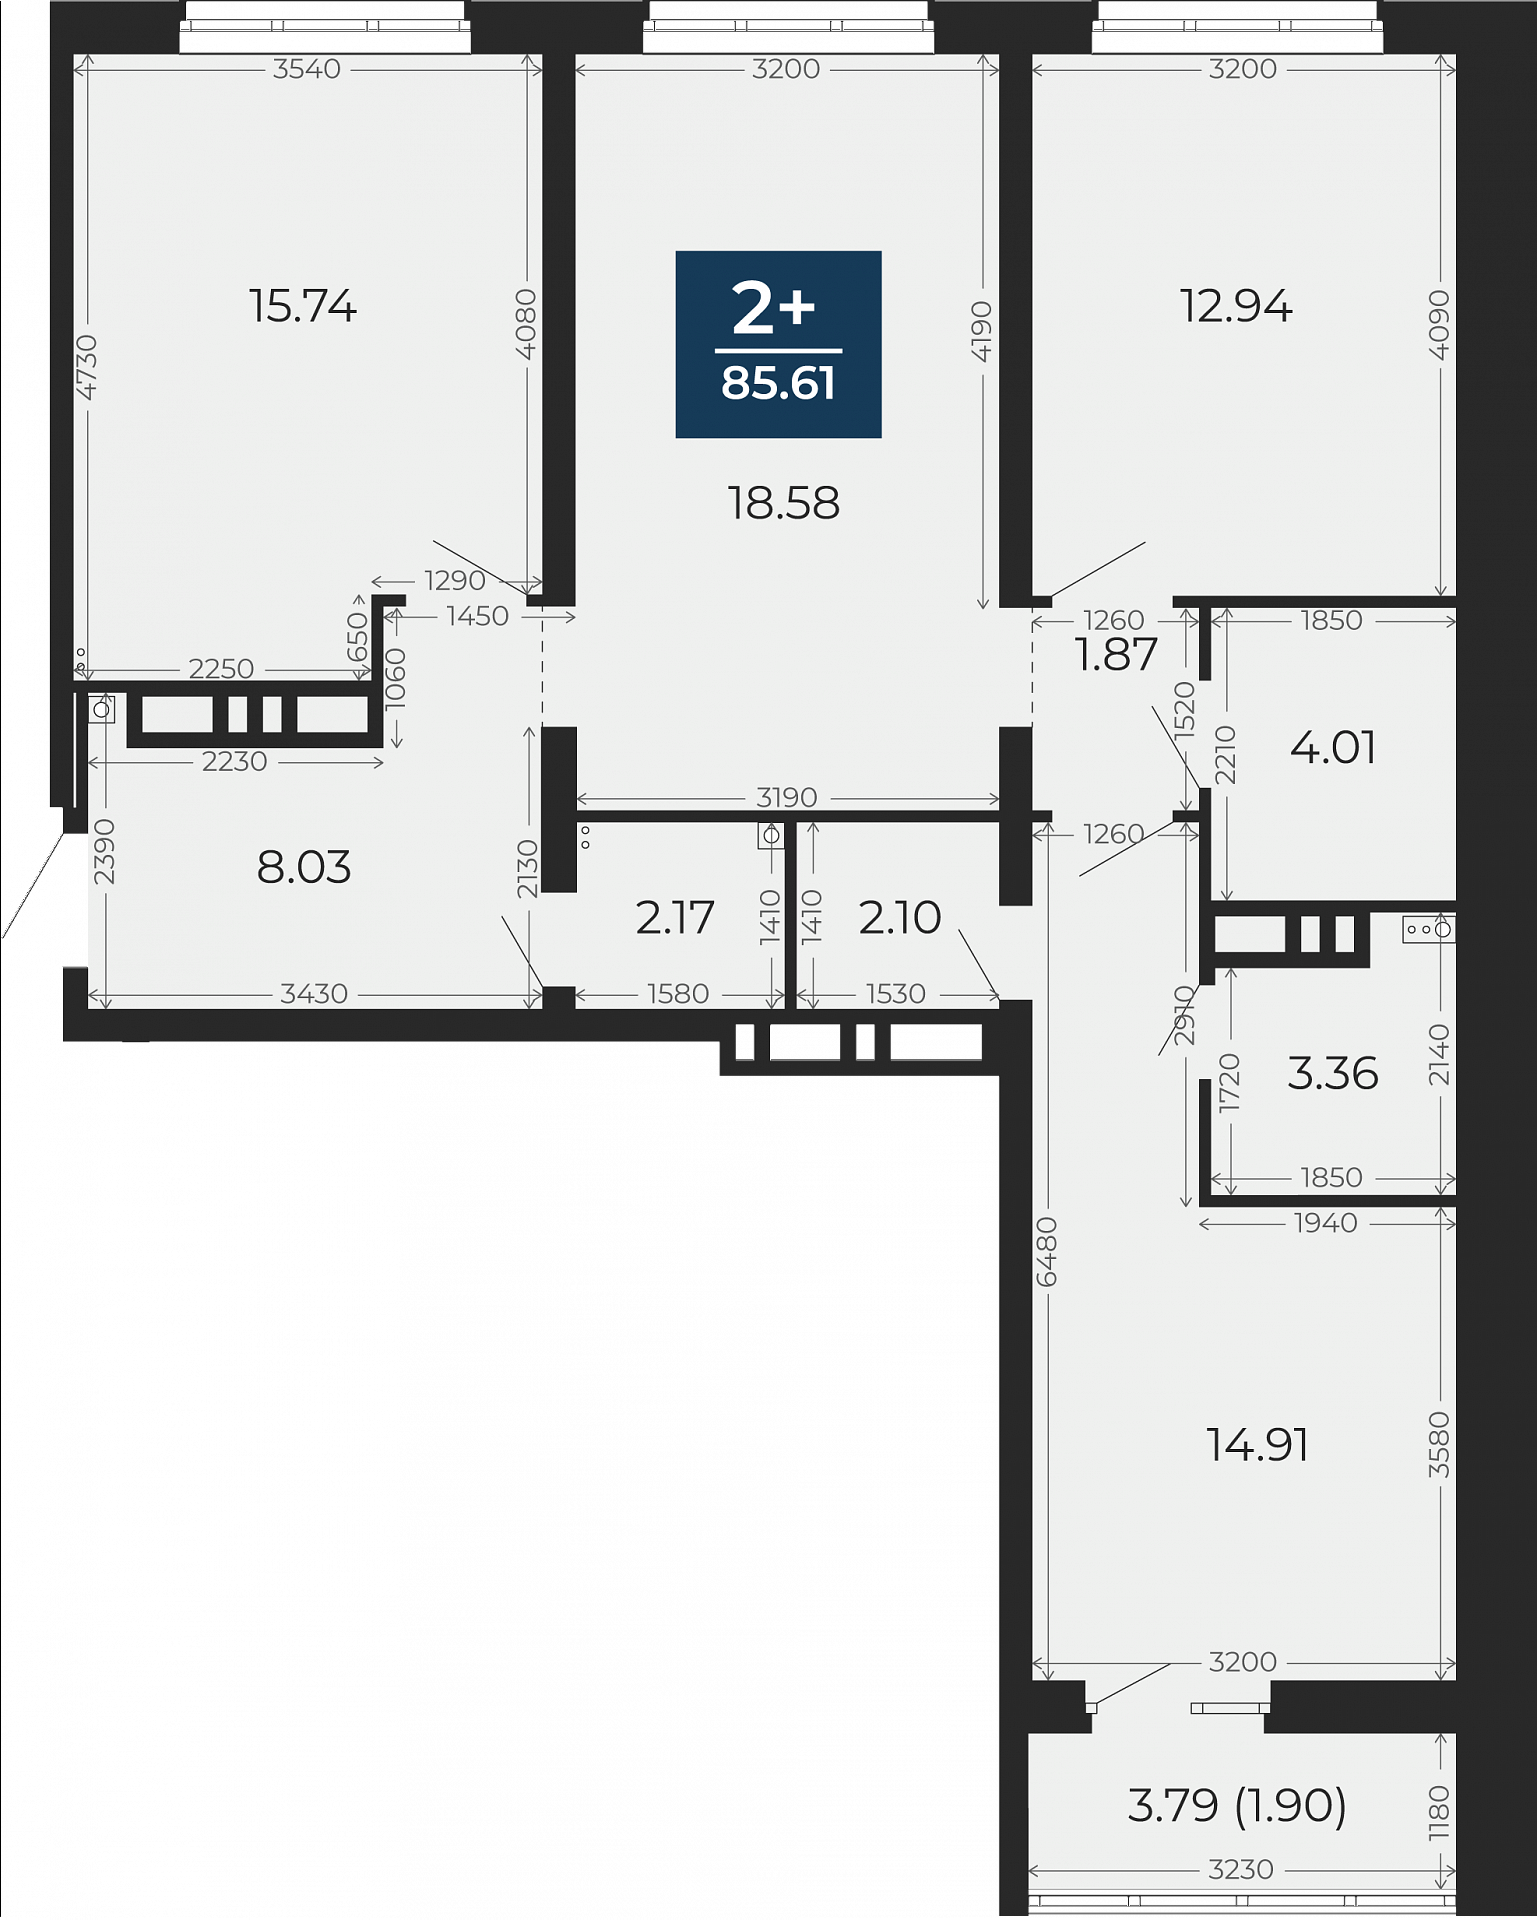 Квартира № 169, 2-комнатная, 85.61 кв. м, 4 этаж